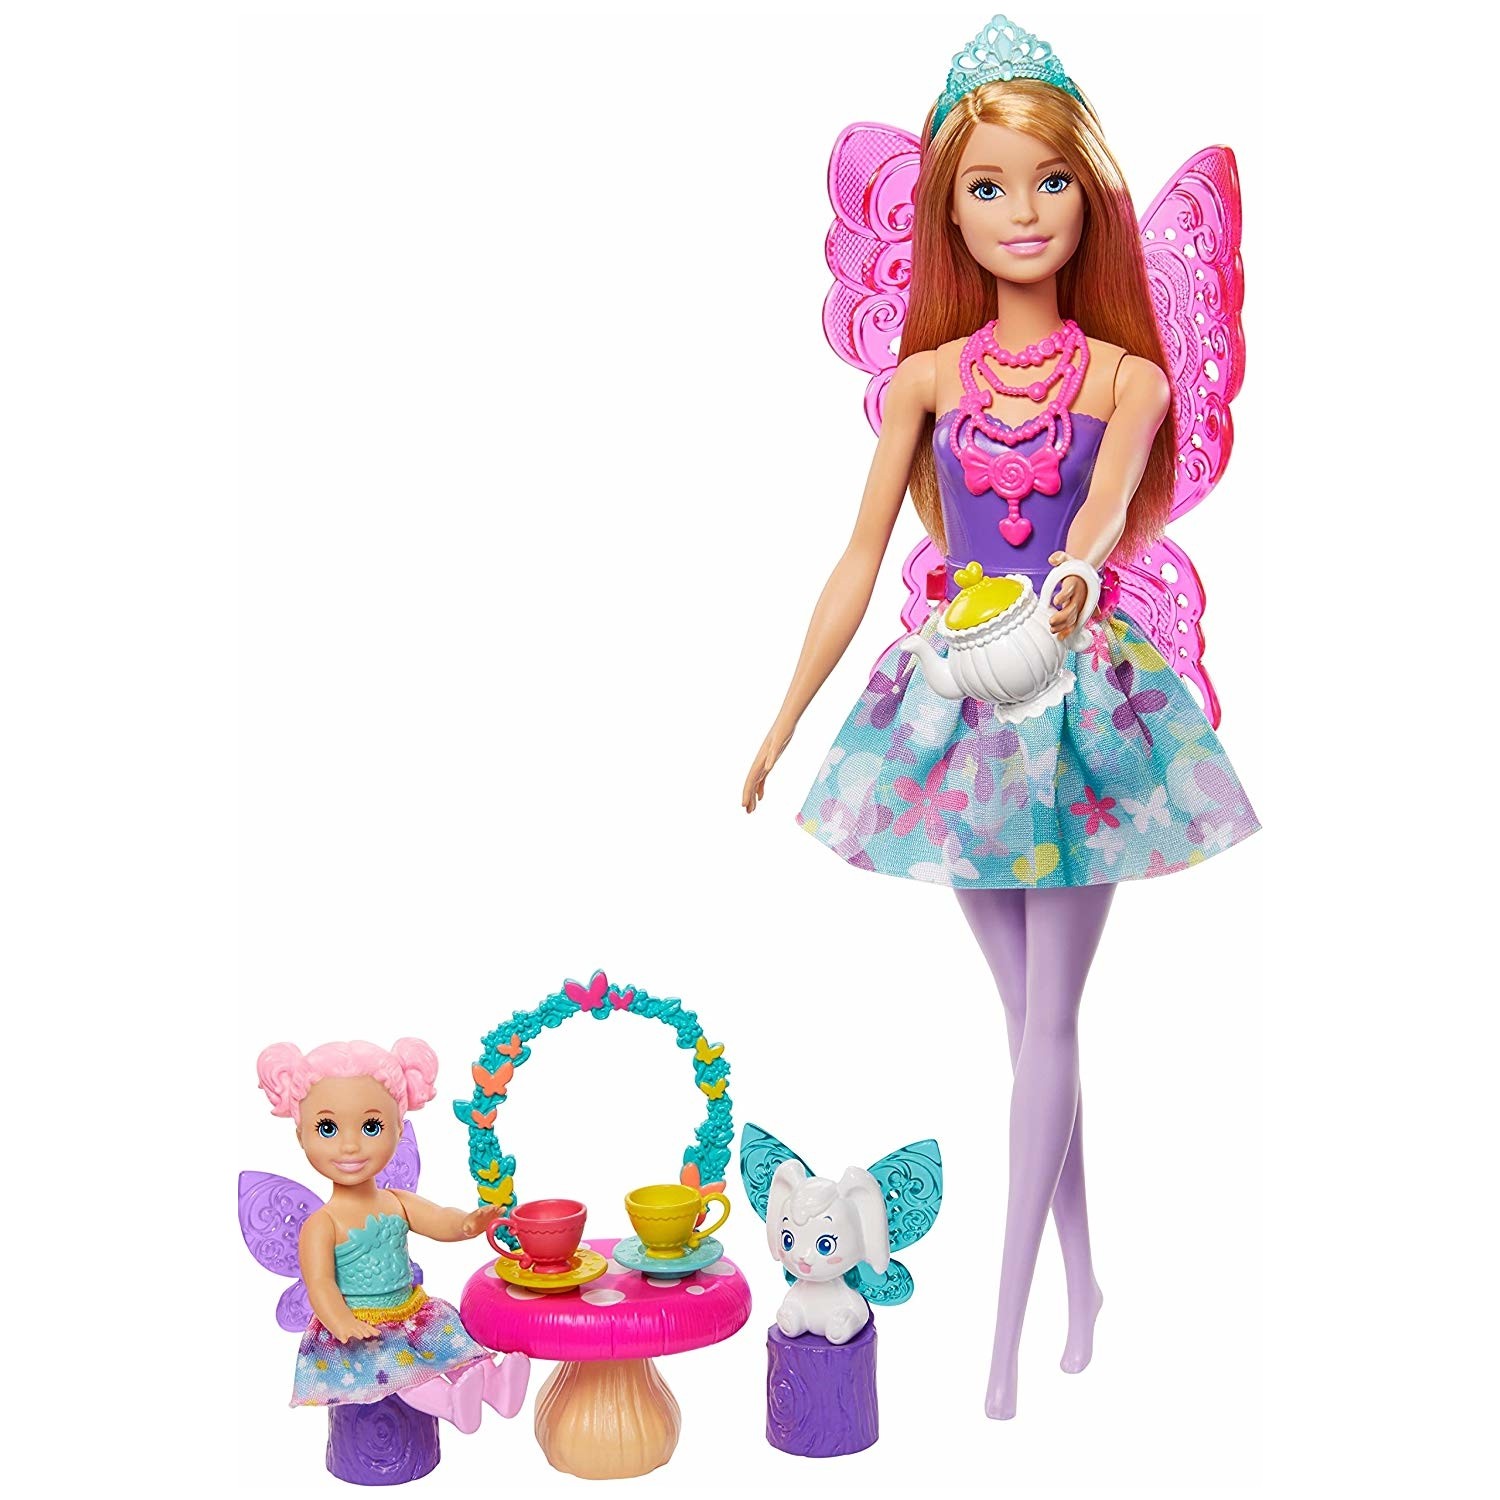 Кукла Barbie Dreamtopia Princess Doll & Accessories GJK50 barbie playset dreamtopia sweetsville